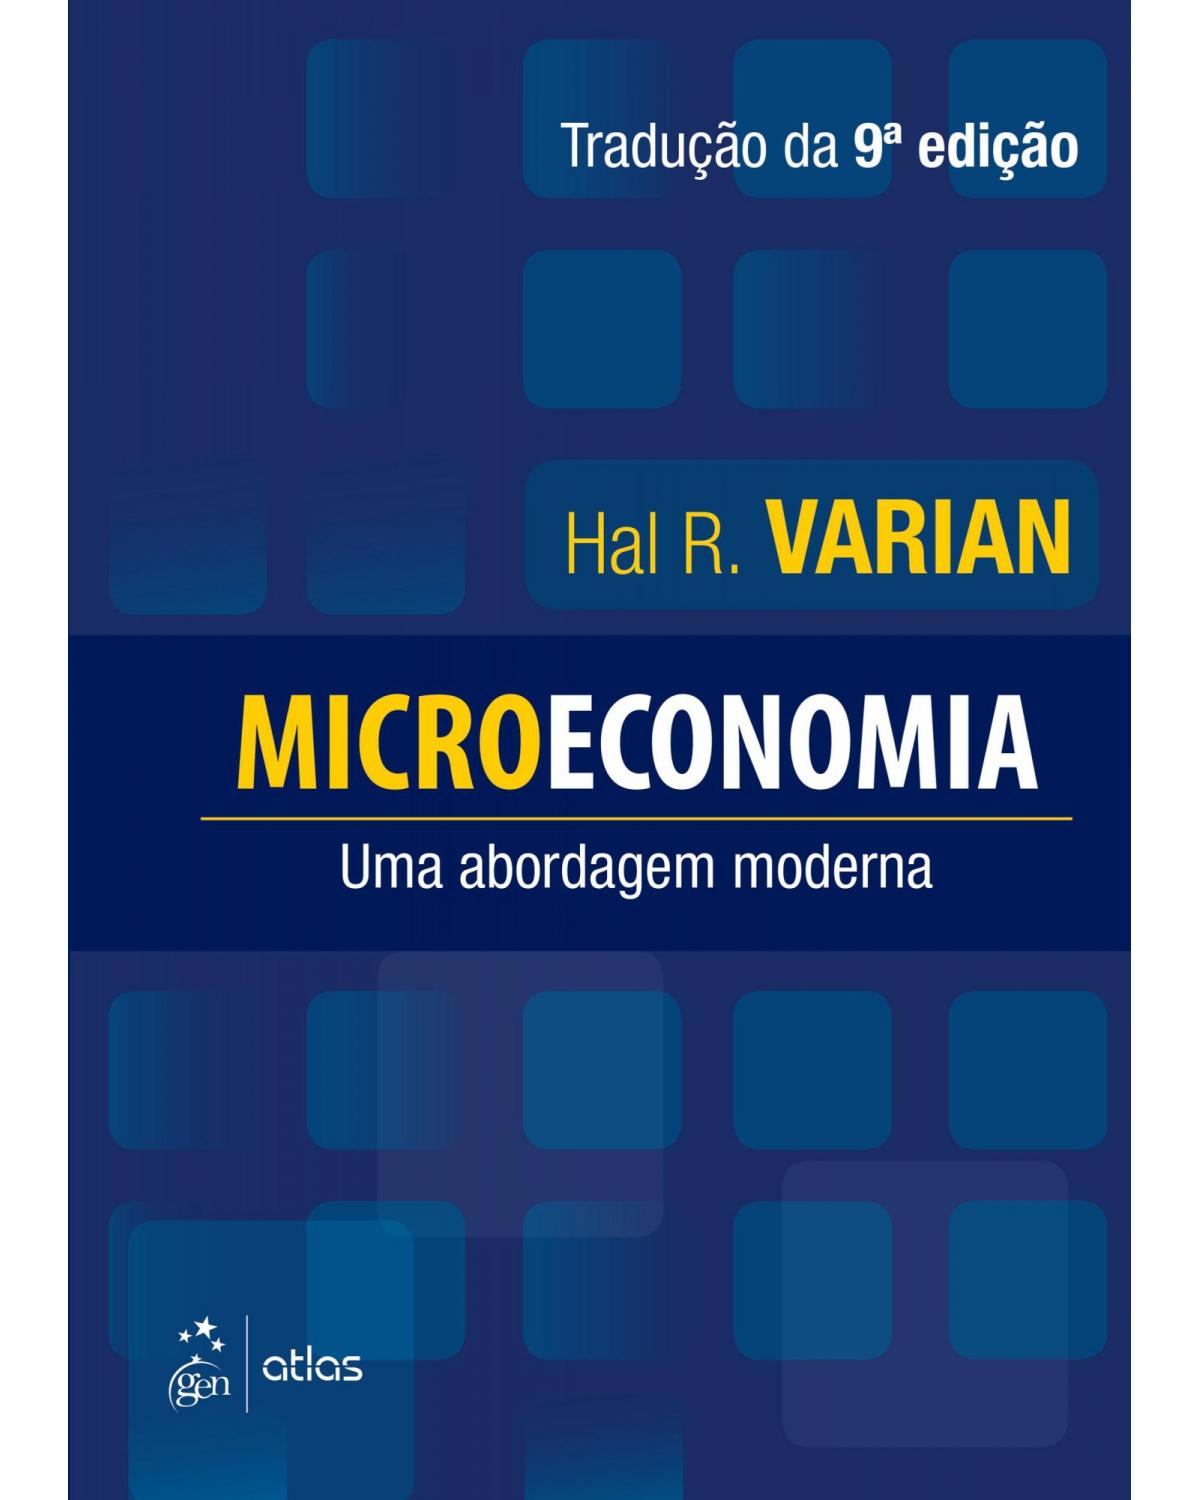 Microeconomia - uma abordagem moderna - 9ª Edição | 2015